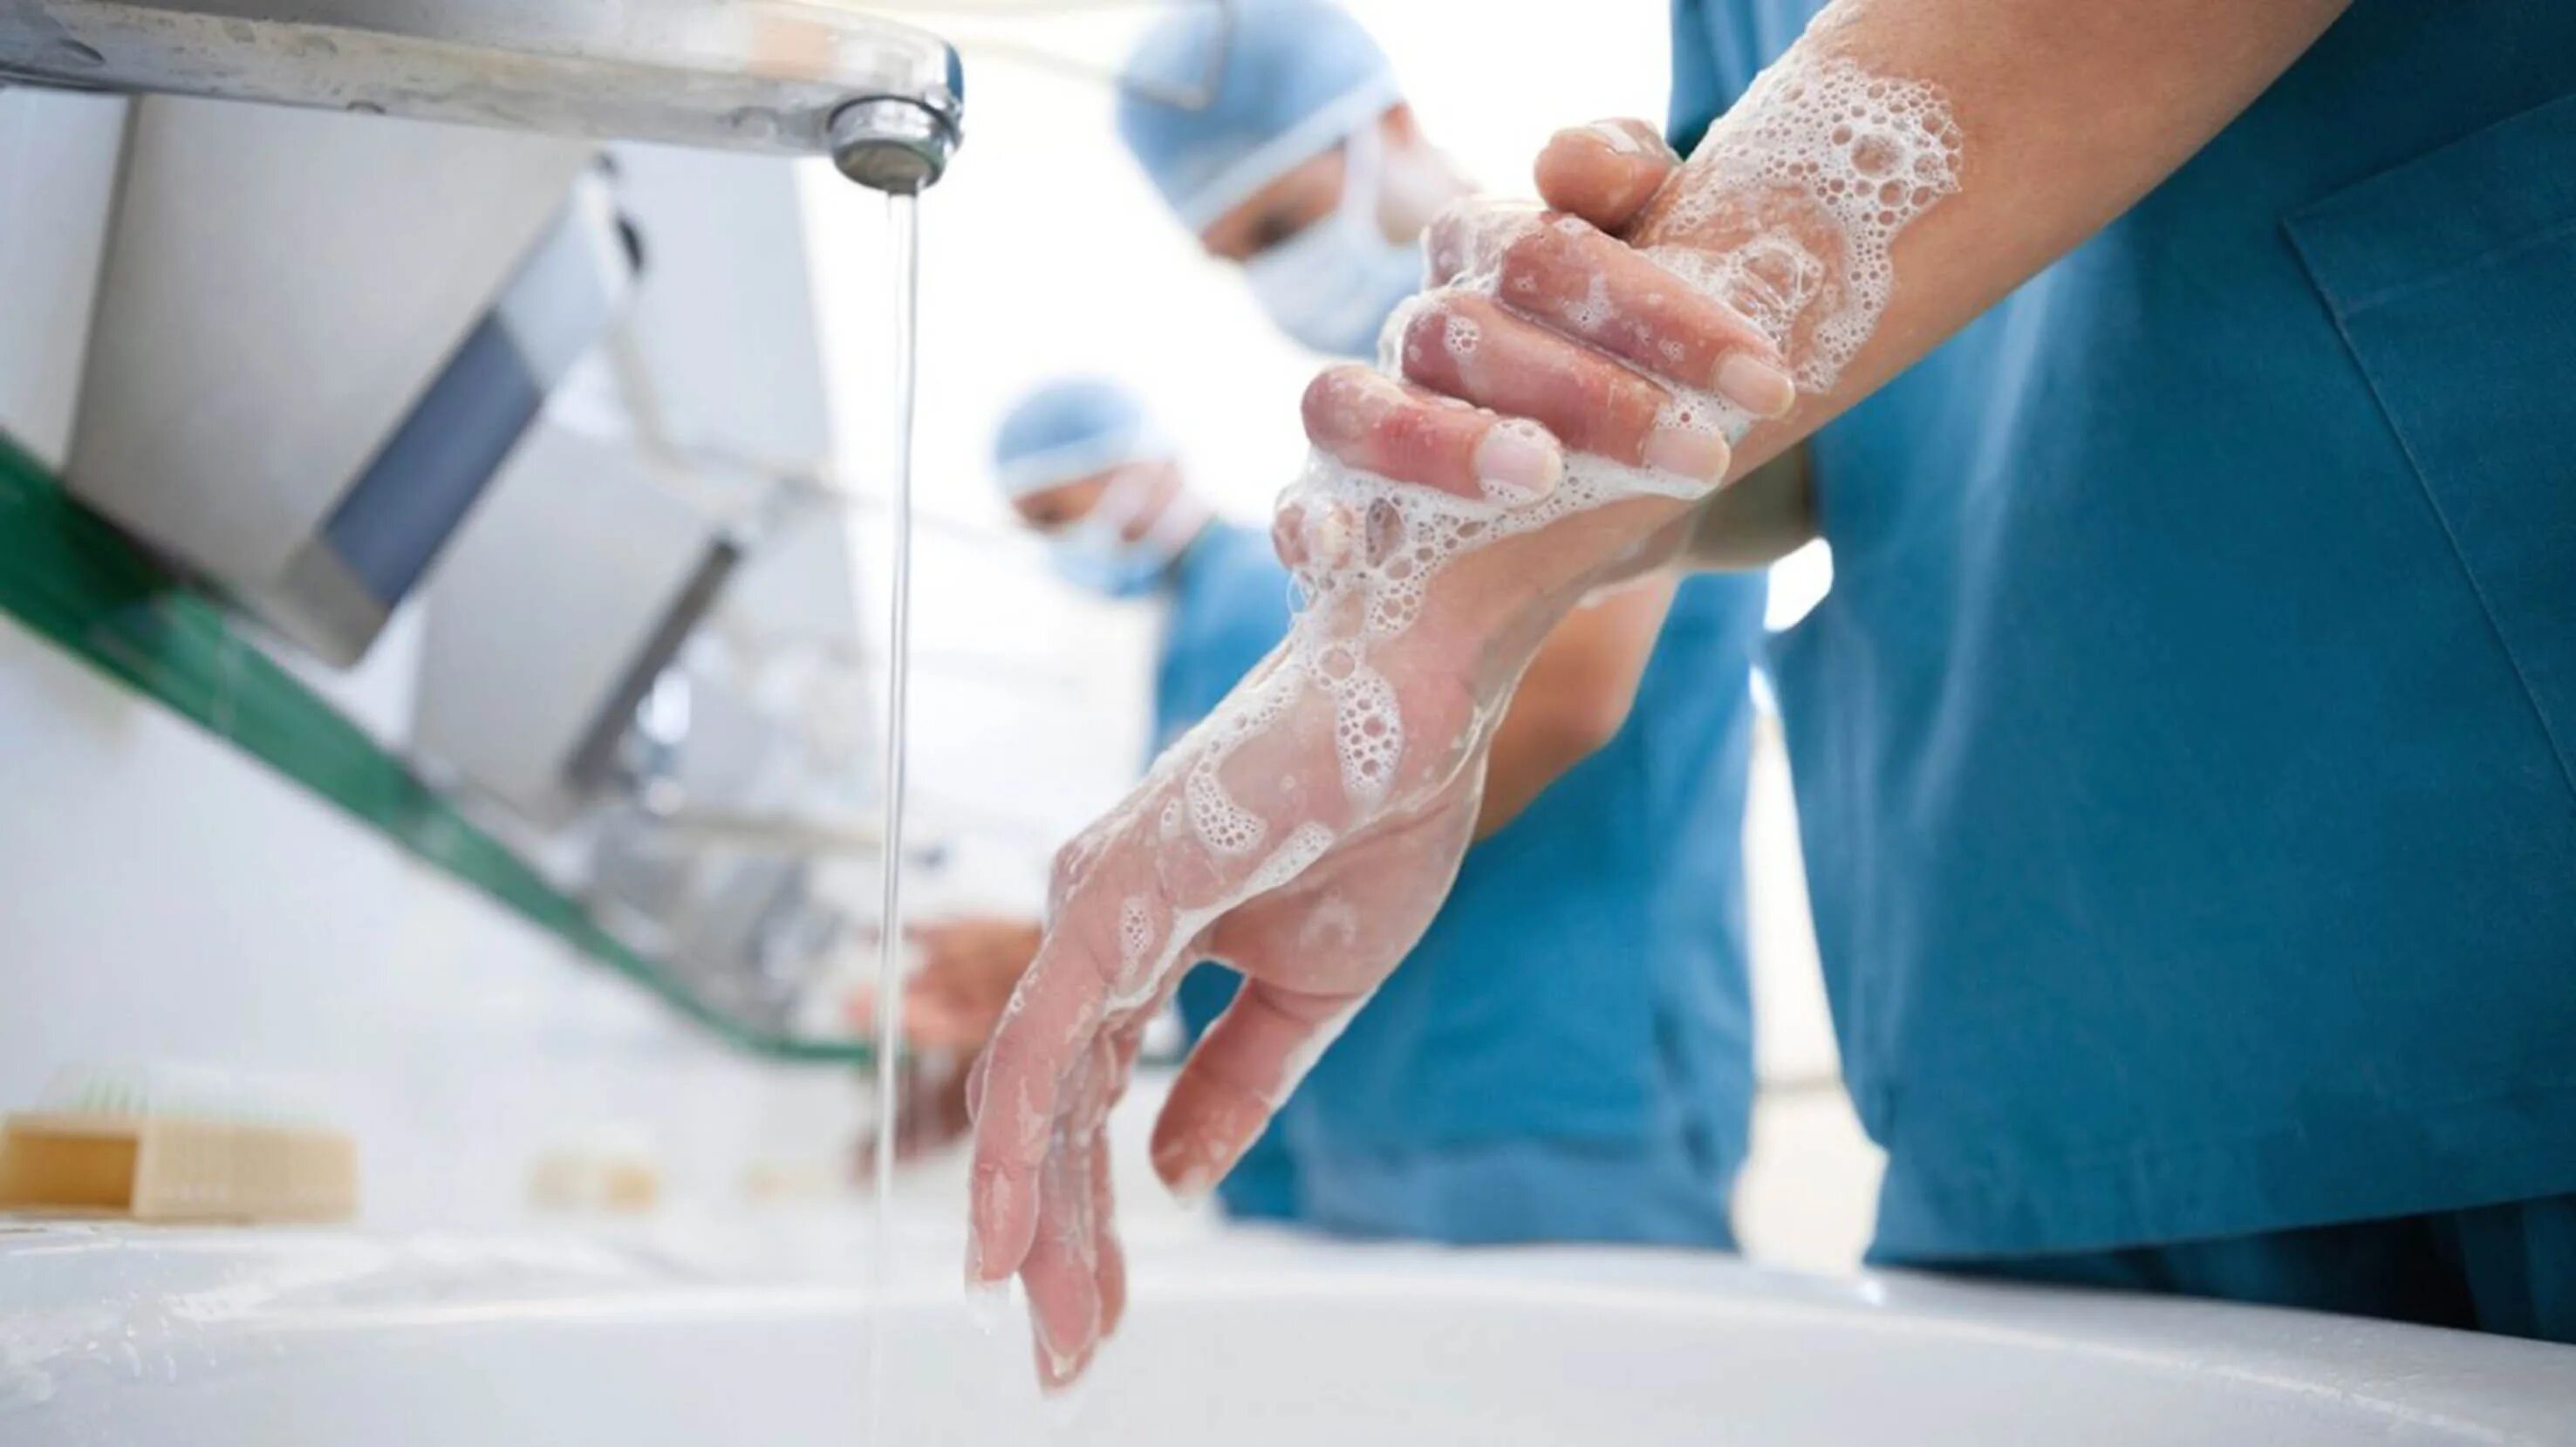 Гигиена в медицине. Гигиена тела медицинского персонала. Гигиена рук. Мытье рук медиков.